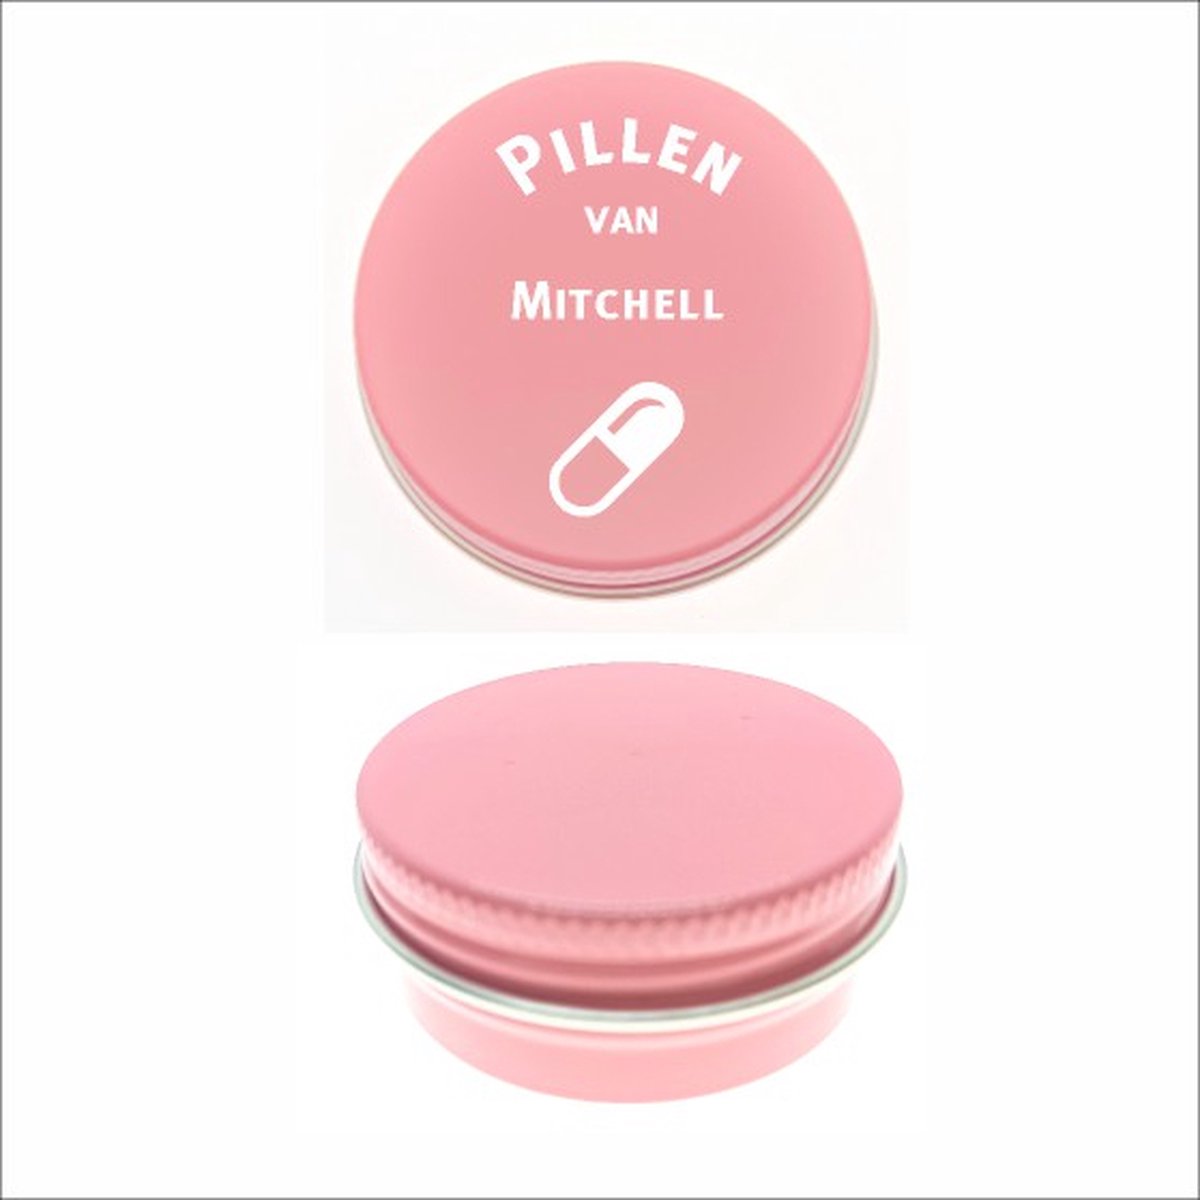 Pillen Blikje Met Naam Gravering - Mitchell